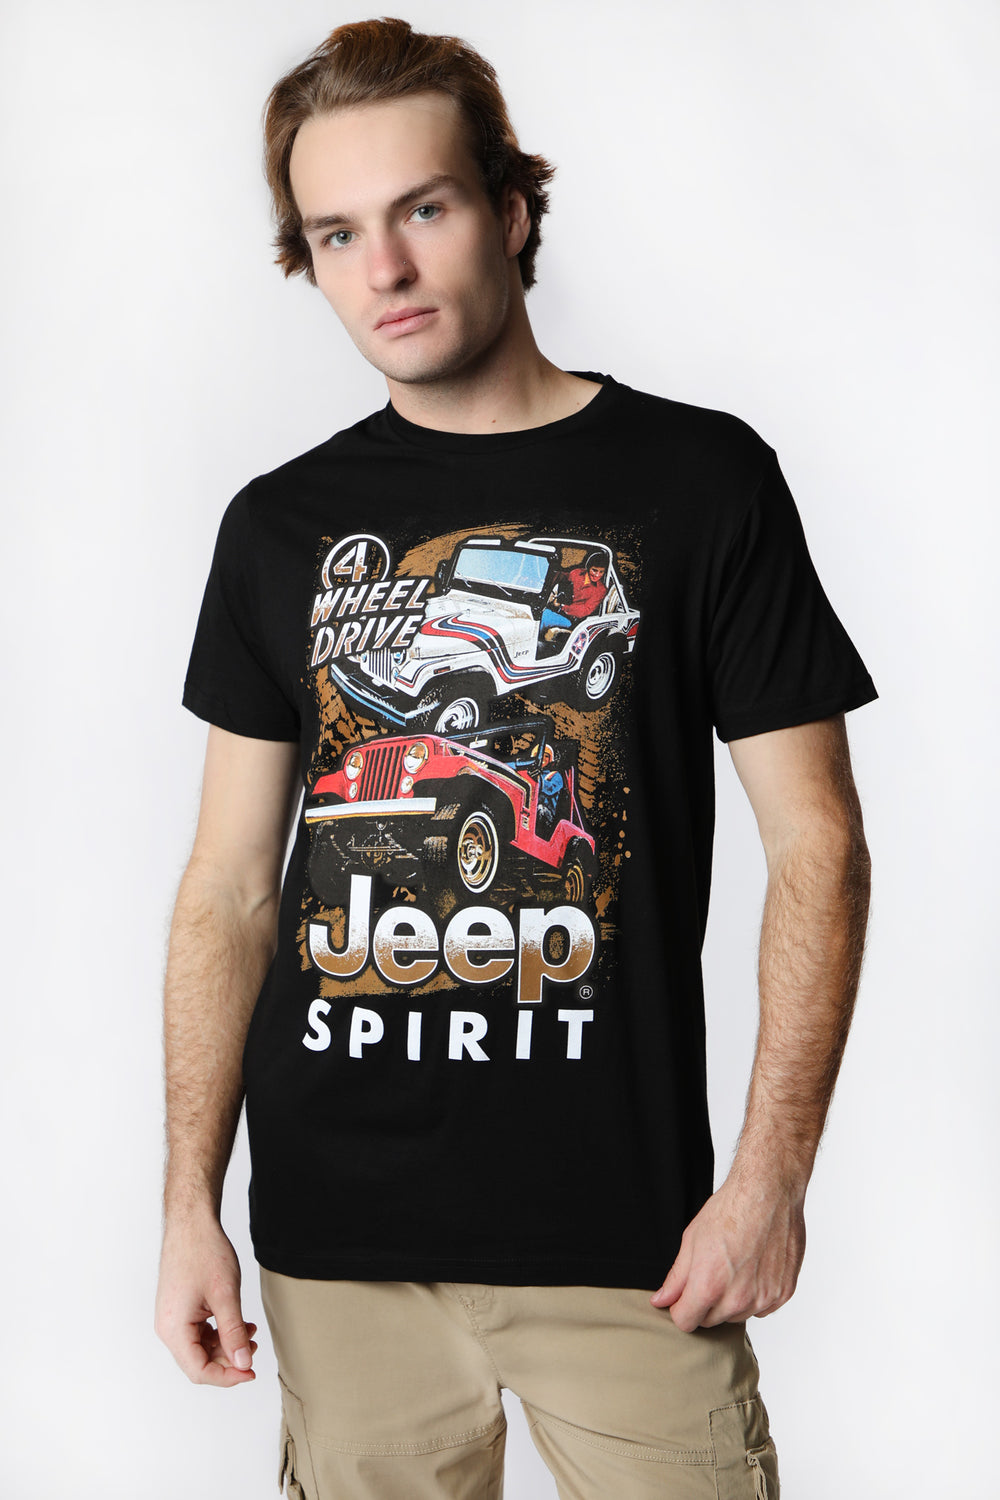 T-Shirt Imprimé Jeep Spirit 4-Wheel Drive Homme T-Shirt Imprimé Jeep Spirit 4-Wheel Drive Homme